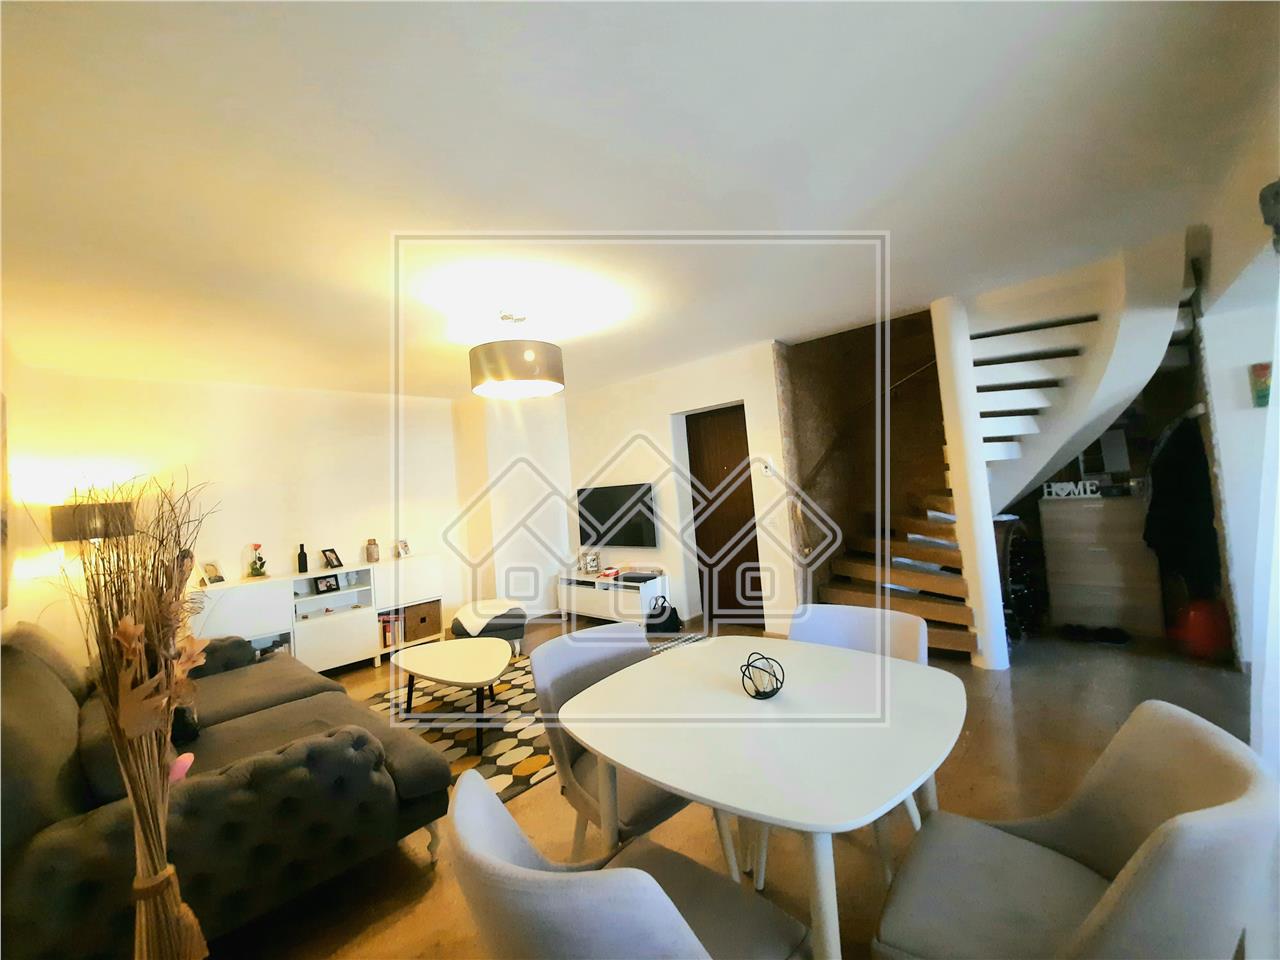 Apartment for sale in Alba Iulia - 3 rooms - 2 balconies - Center